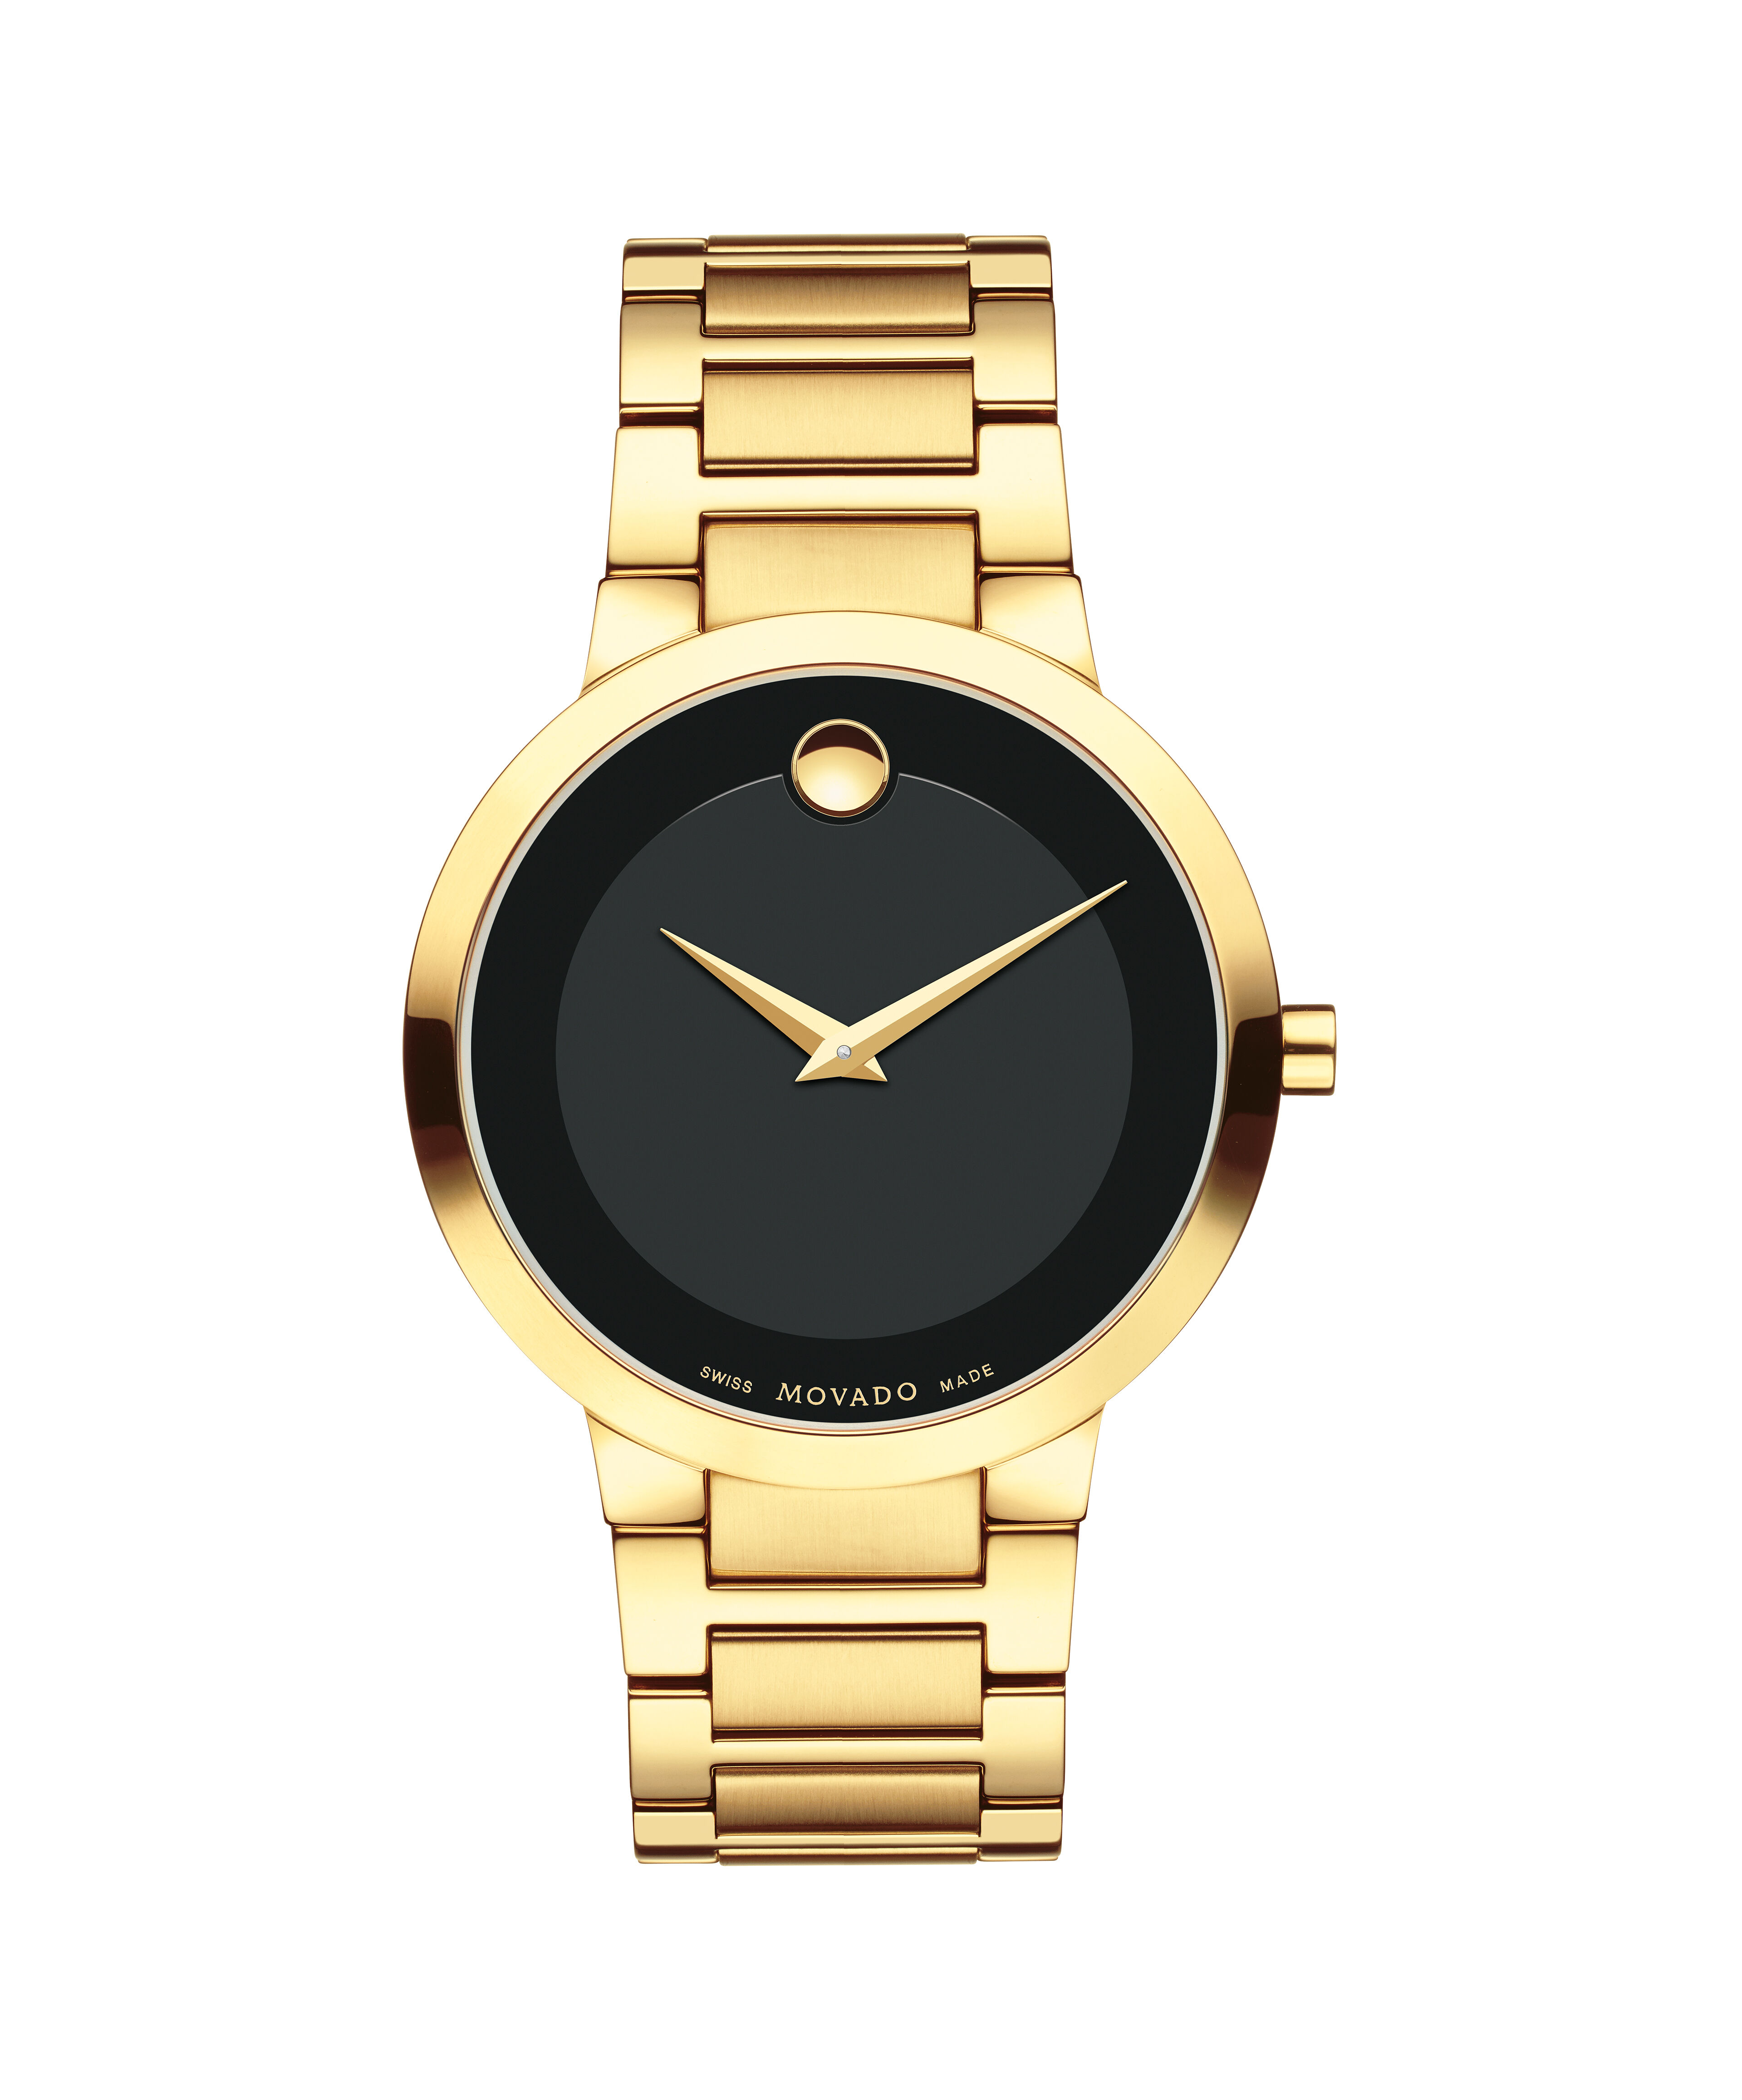 Fake Gold Piaget Watches